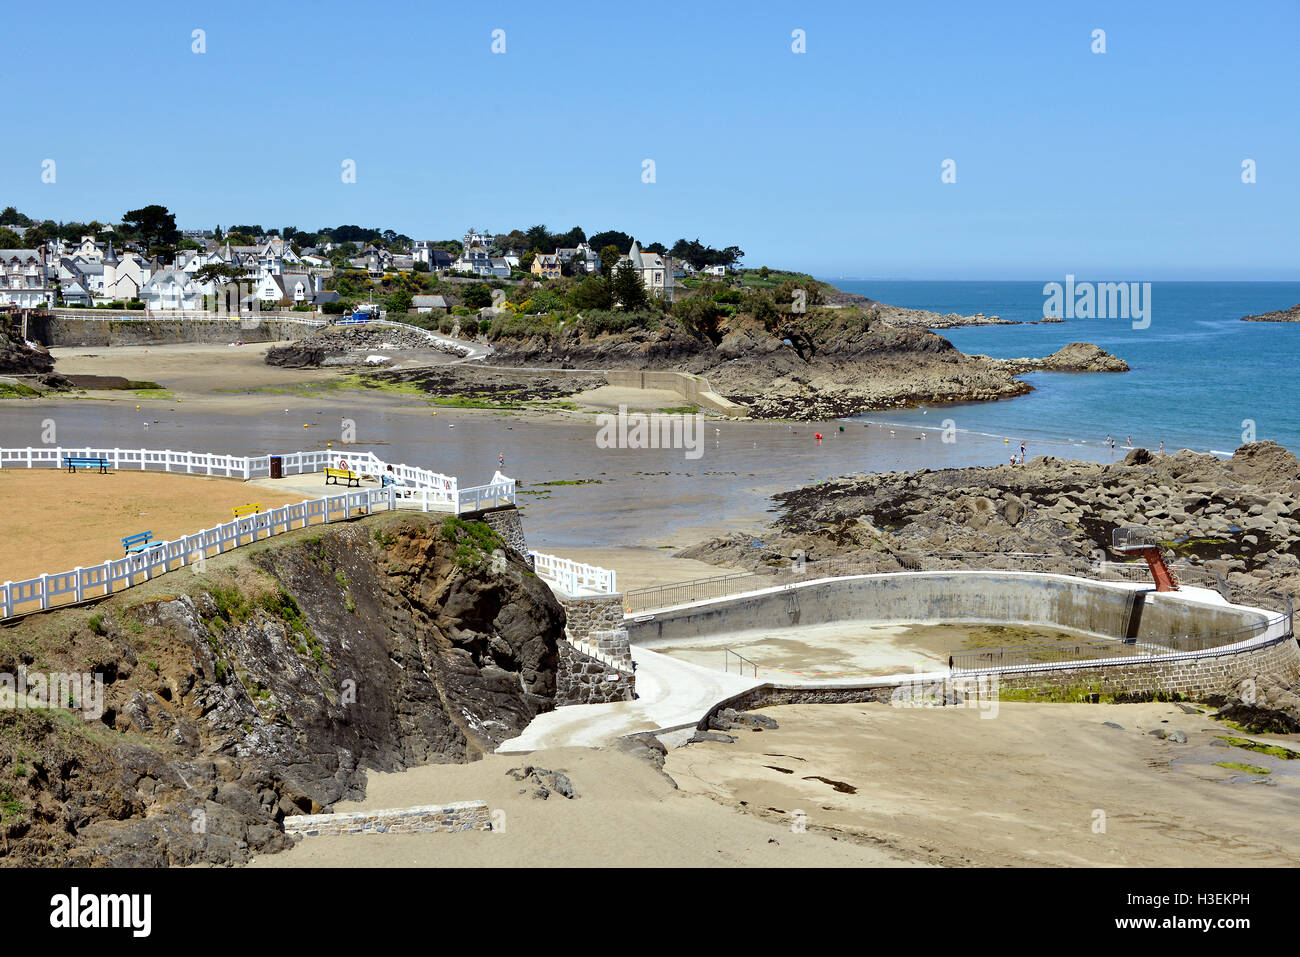 La spiaggia e la città di Saint-Quay-Portrieux, comune della Côtes-d'Armor dipartimento della Bretagna in Francia nordoccidentale. Foto Stock